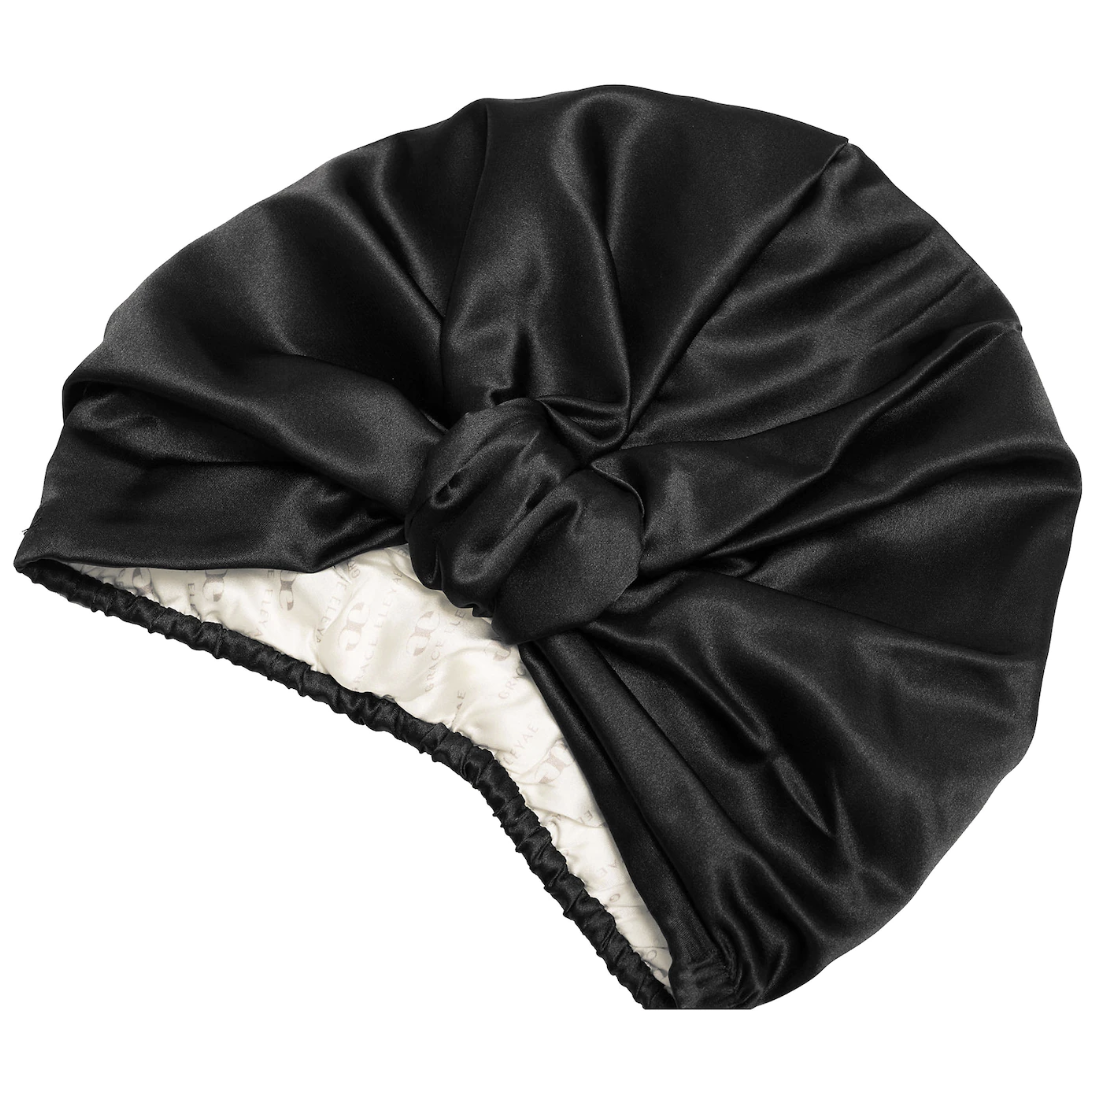 1 SOLID COLOR Large Size Adjustable Satin Bonnet Hair - Etsy | Satin bonnet,  Hair bonnet, Hair piece